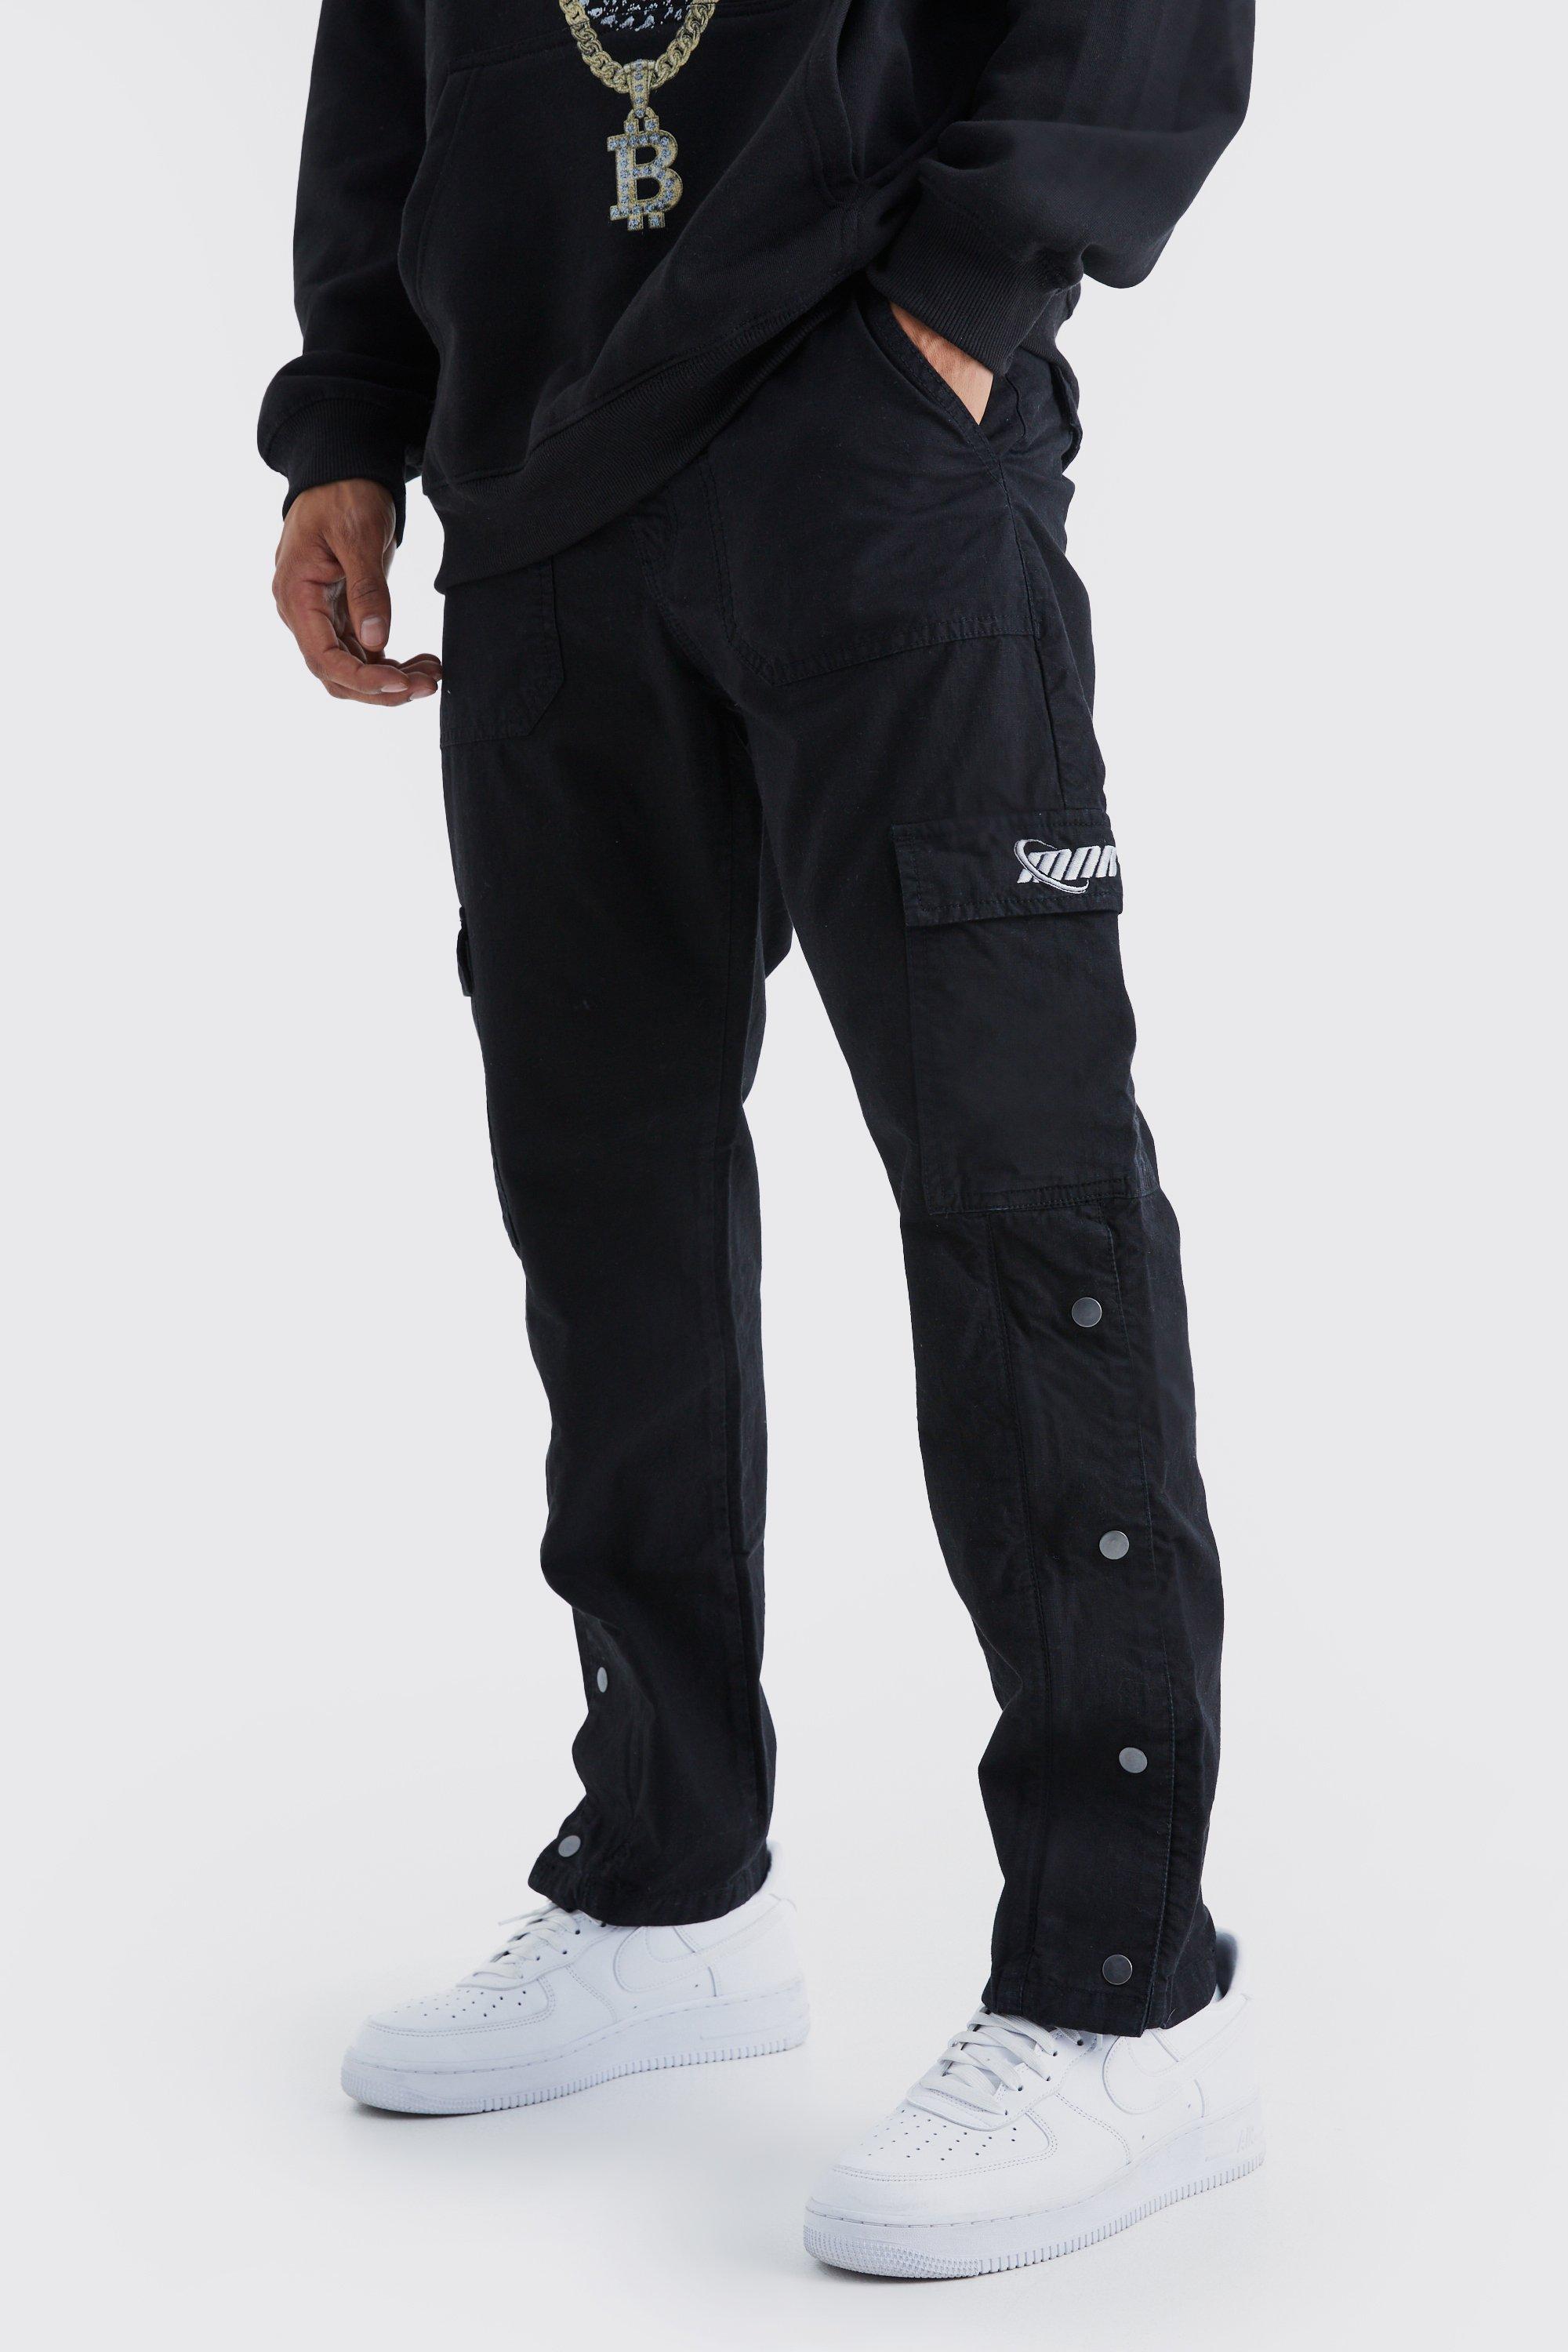 Image of Pantaloni dritti stile Cargo in nylon ripstop con bottoni a pressione sul fondo, Nero